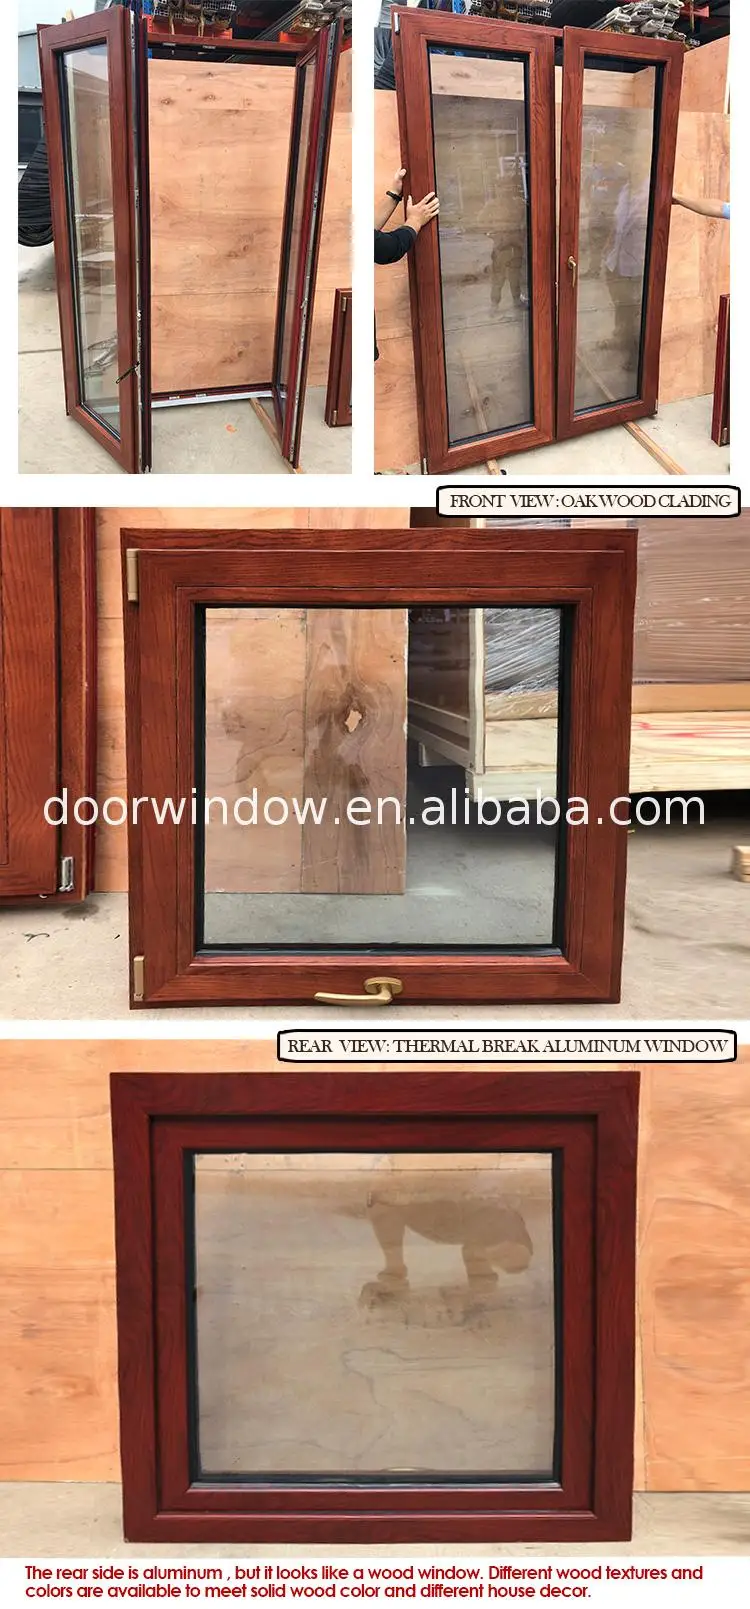 Aluminum profile arch window glass door&window frame door and for office